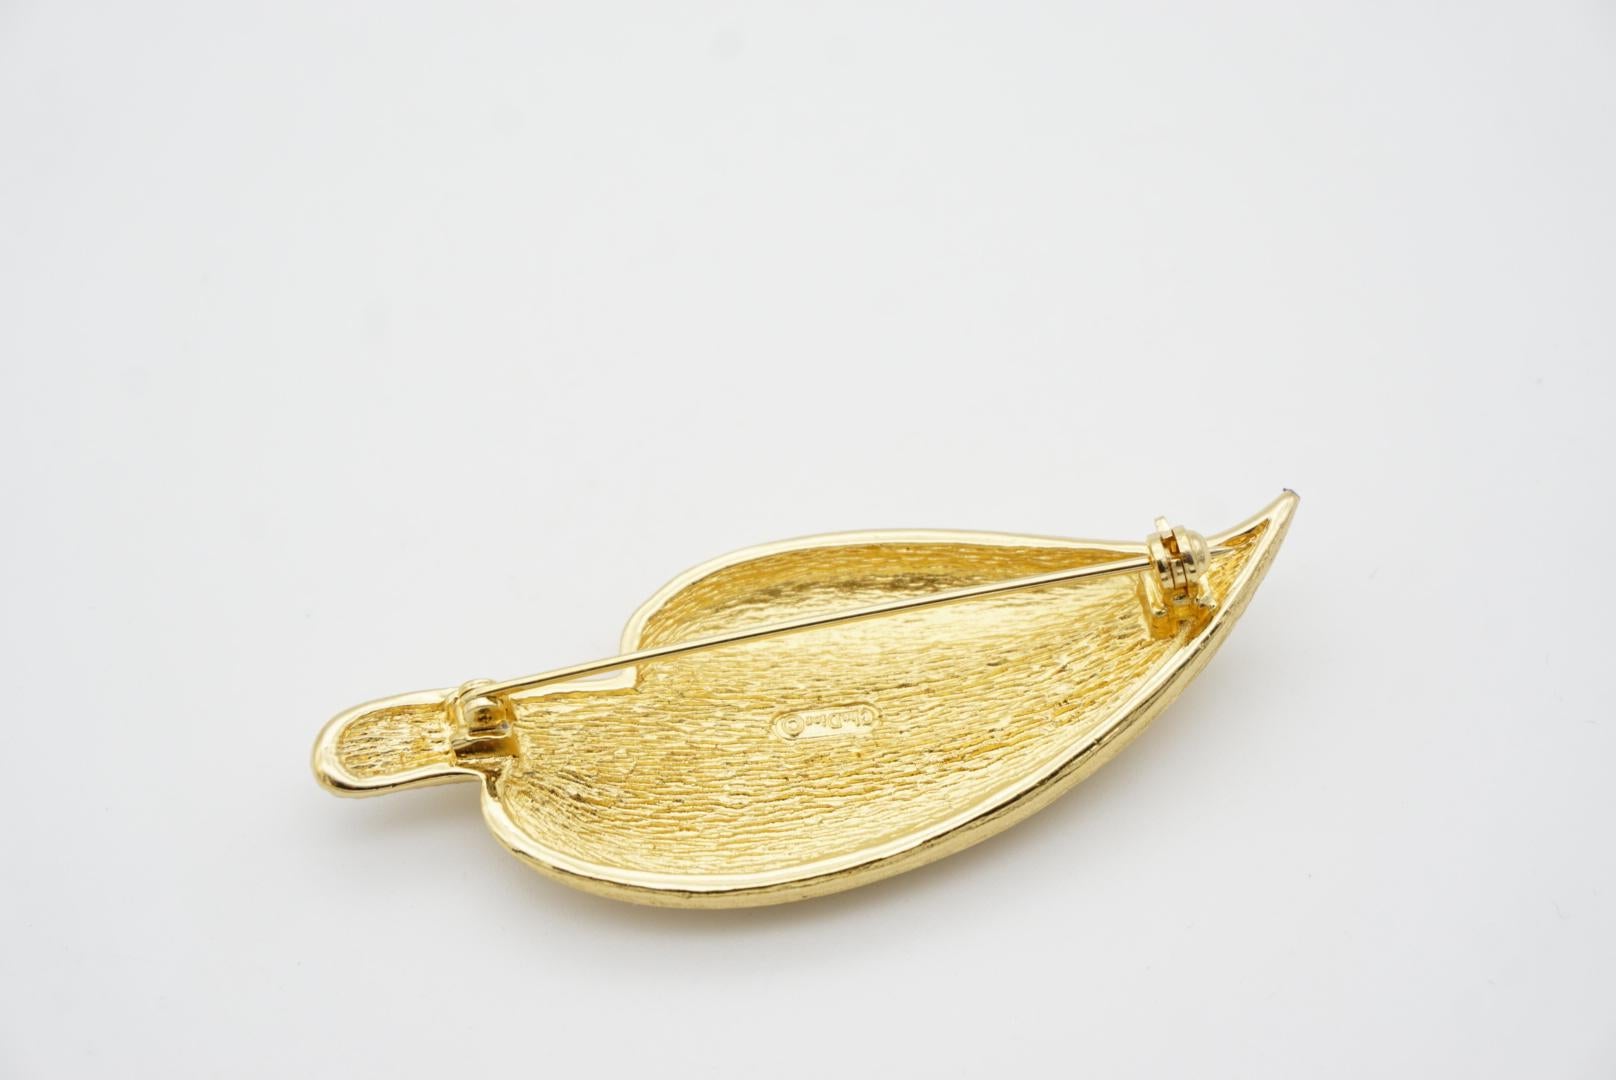 Christian Dior 1980s Vintage Large Wavy Swarovski Crystals Gold Palm Leaf Brooch For Sale 7